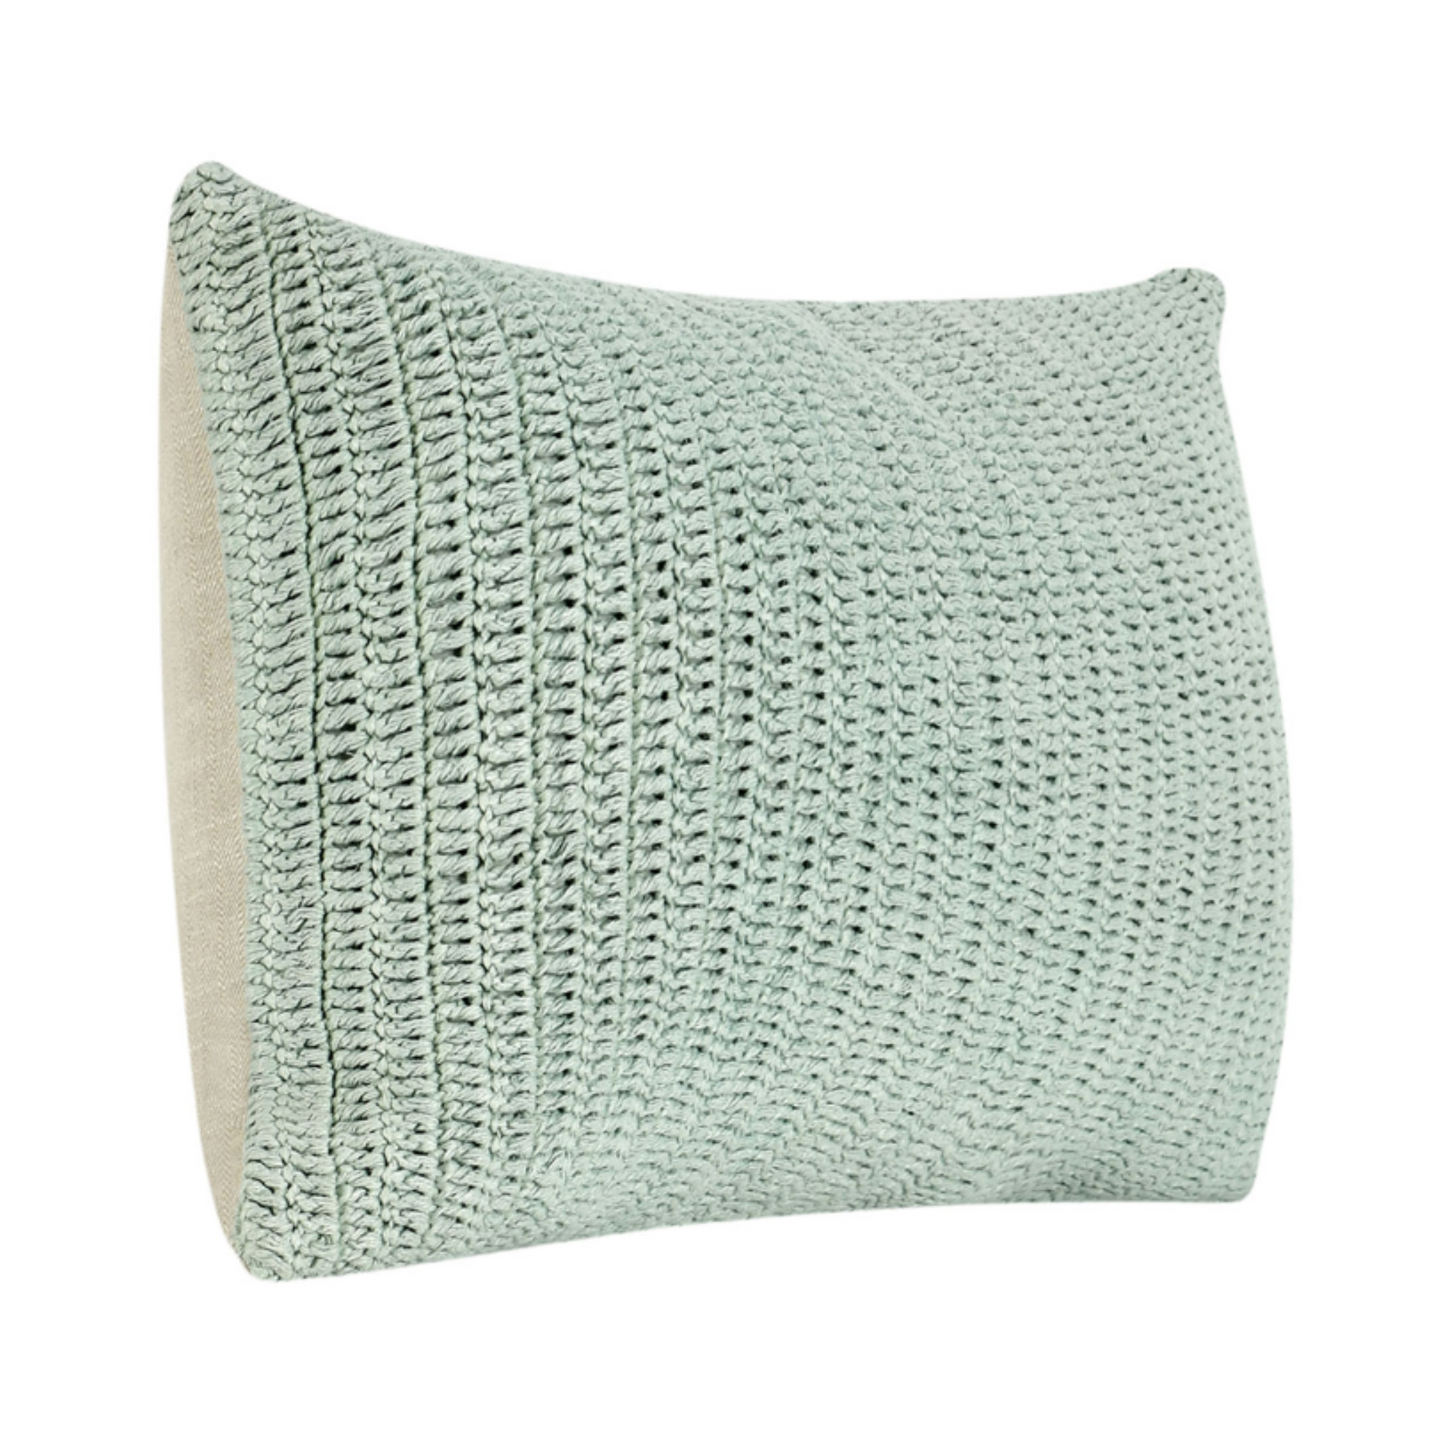 Rina Sagebrush Lumbar Pillow 14 x 26